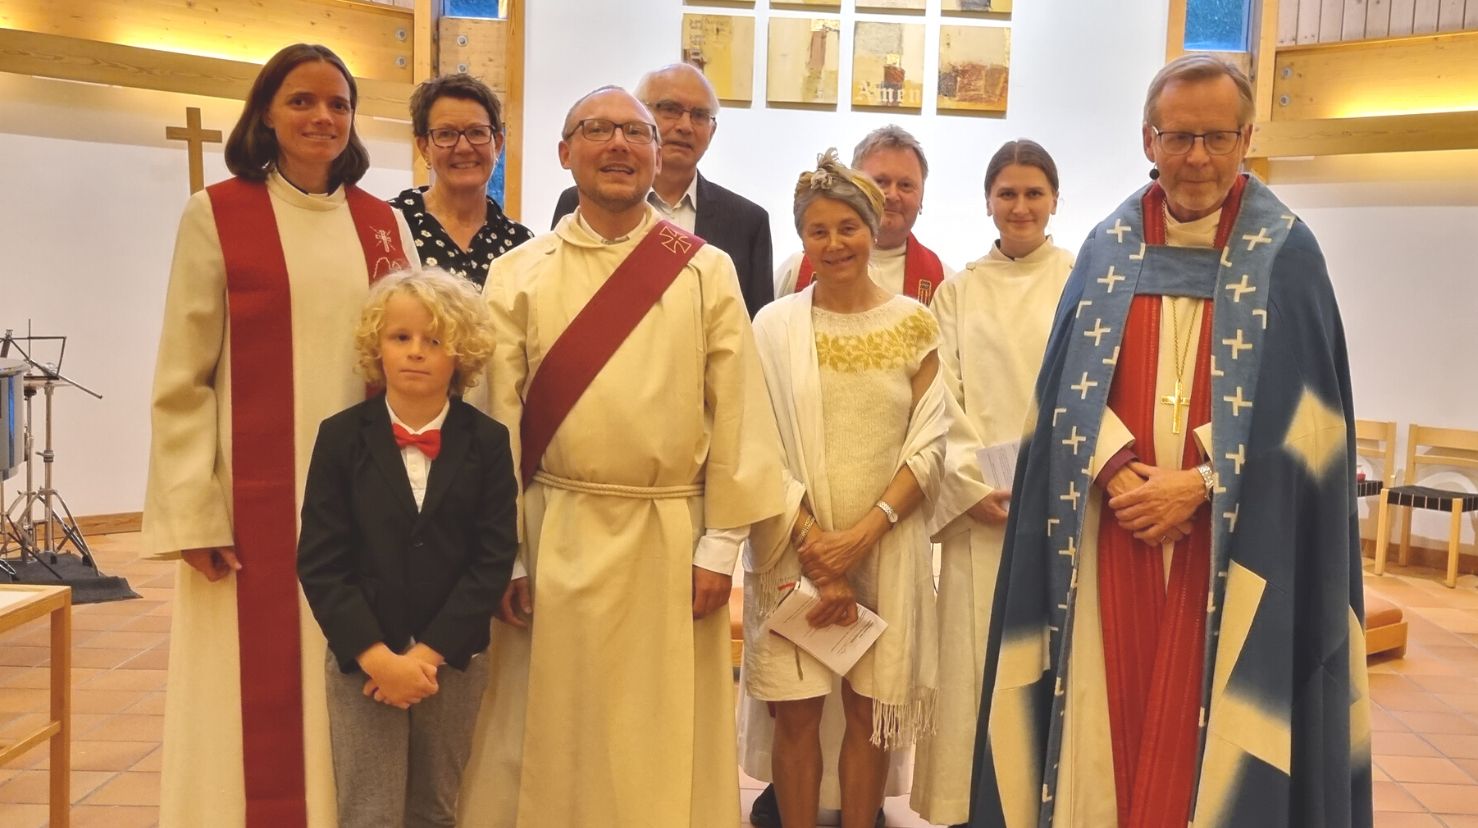  Michael Fiedczak saman med m.a. Biskop Halvor Nordhaug etter gudstenesta, samt familie og kollegaer.